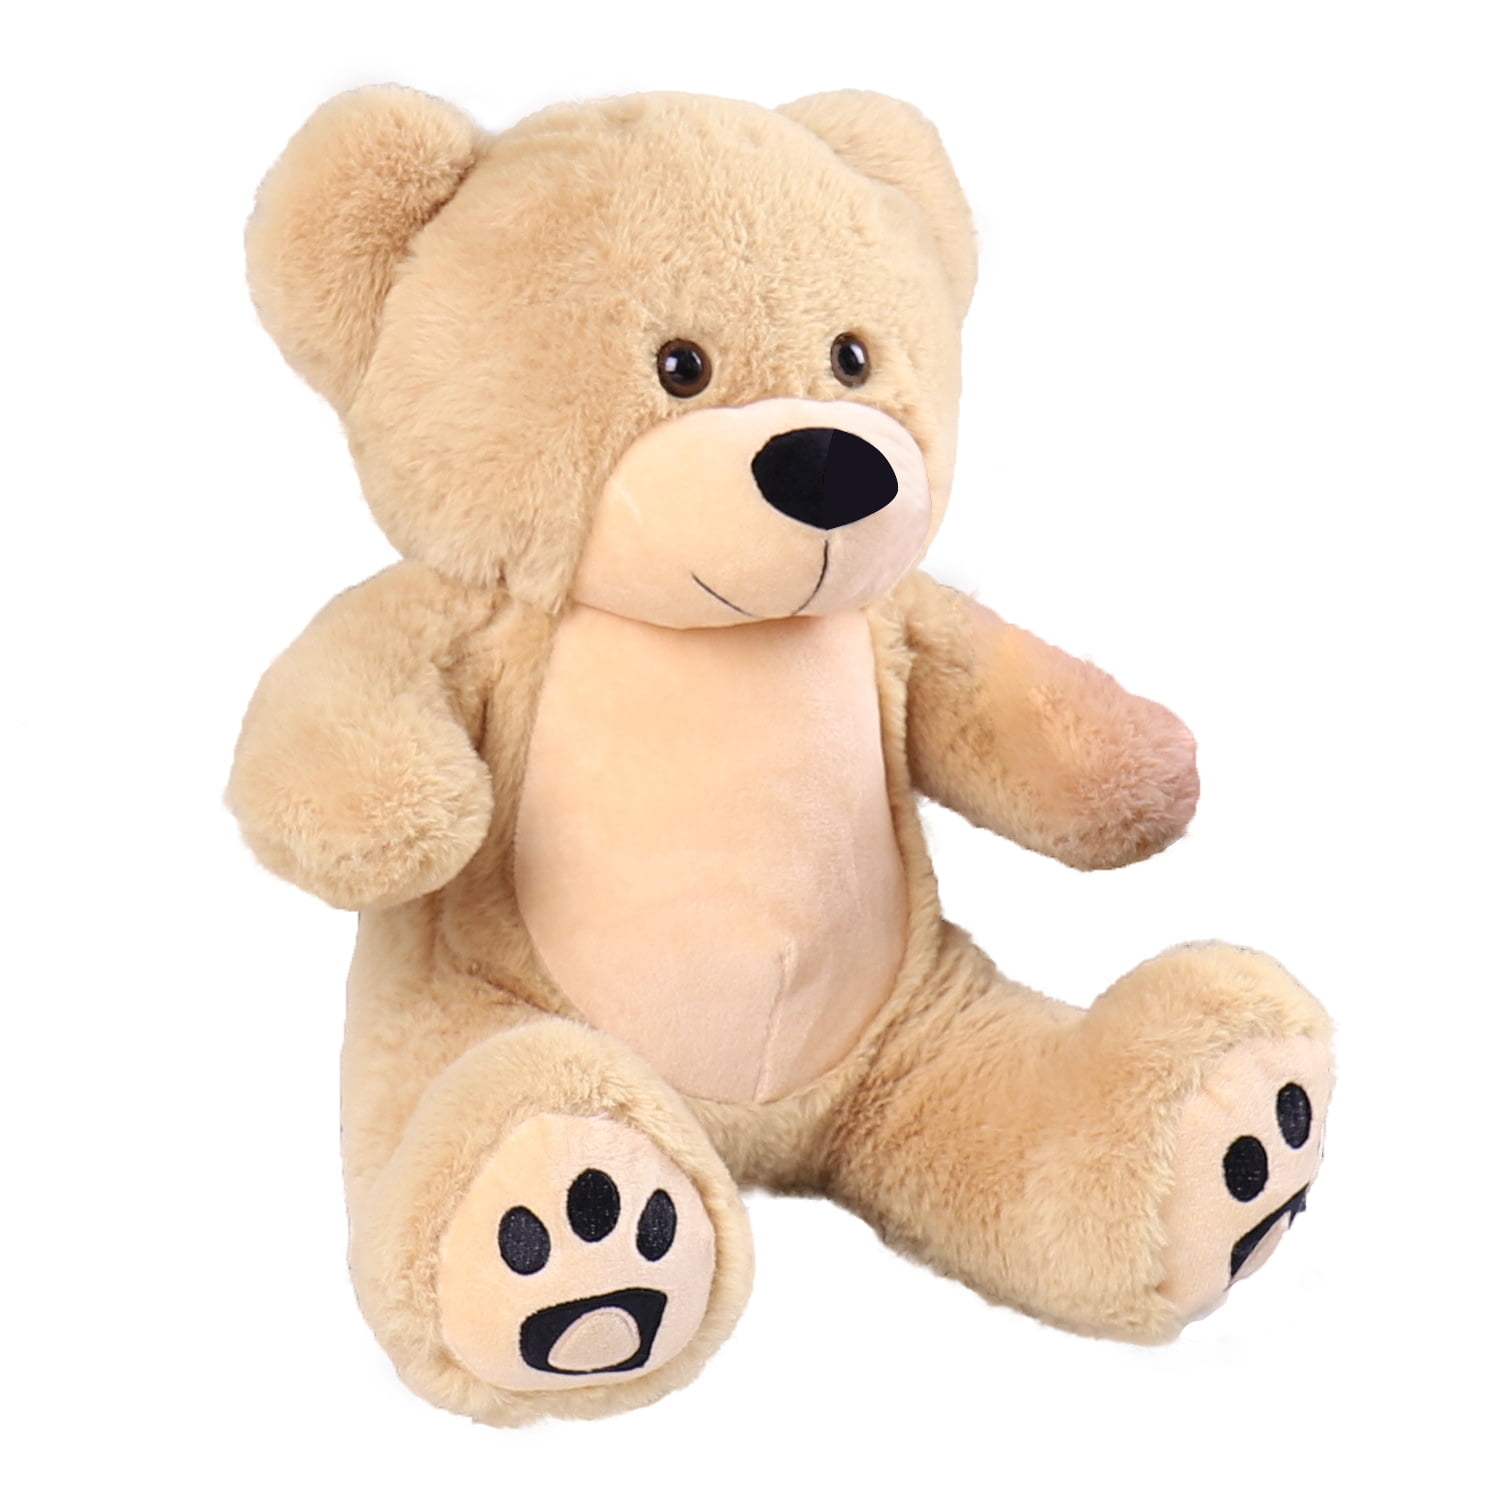 Teddy Bear Giant 55" Big Stuffed Animal Brown Plush Soft Toy 140cm HUGE Cuddly 